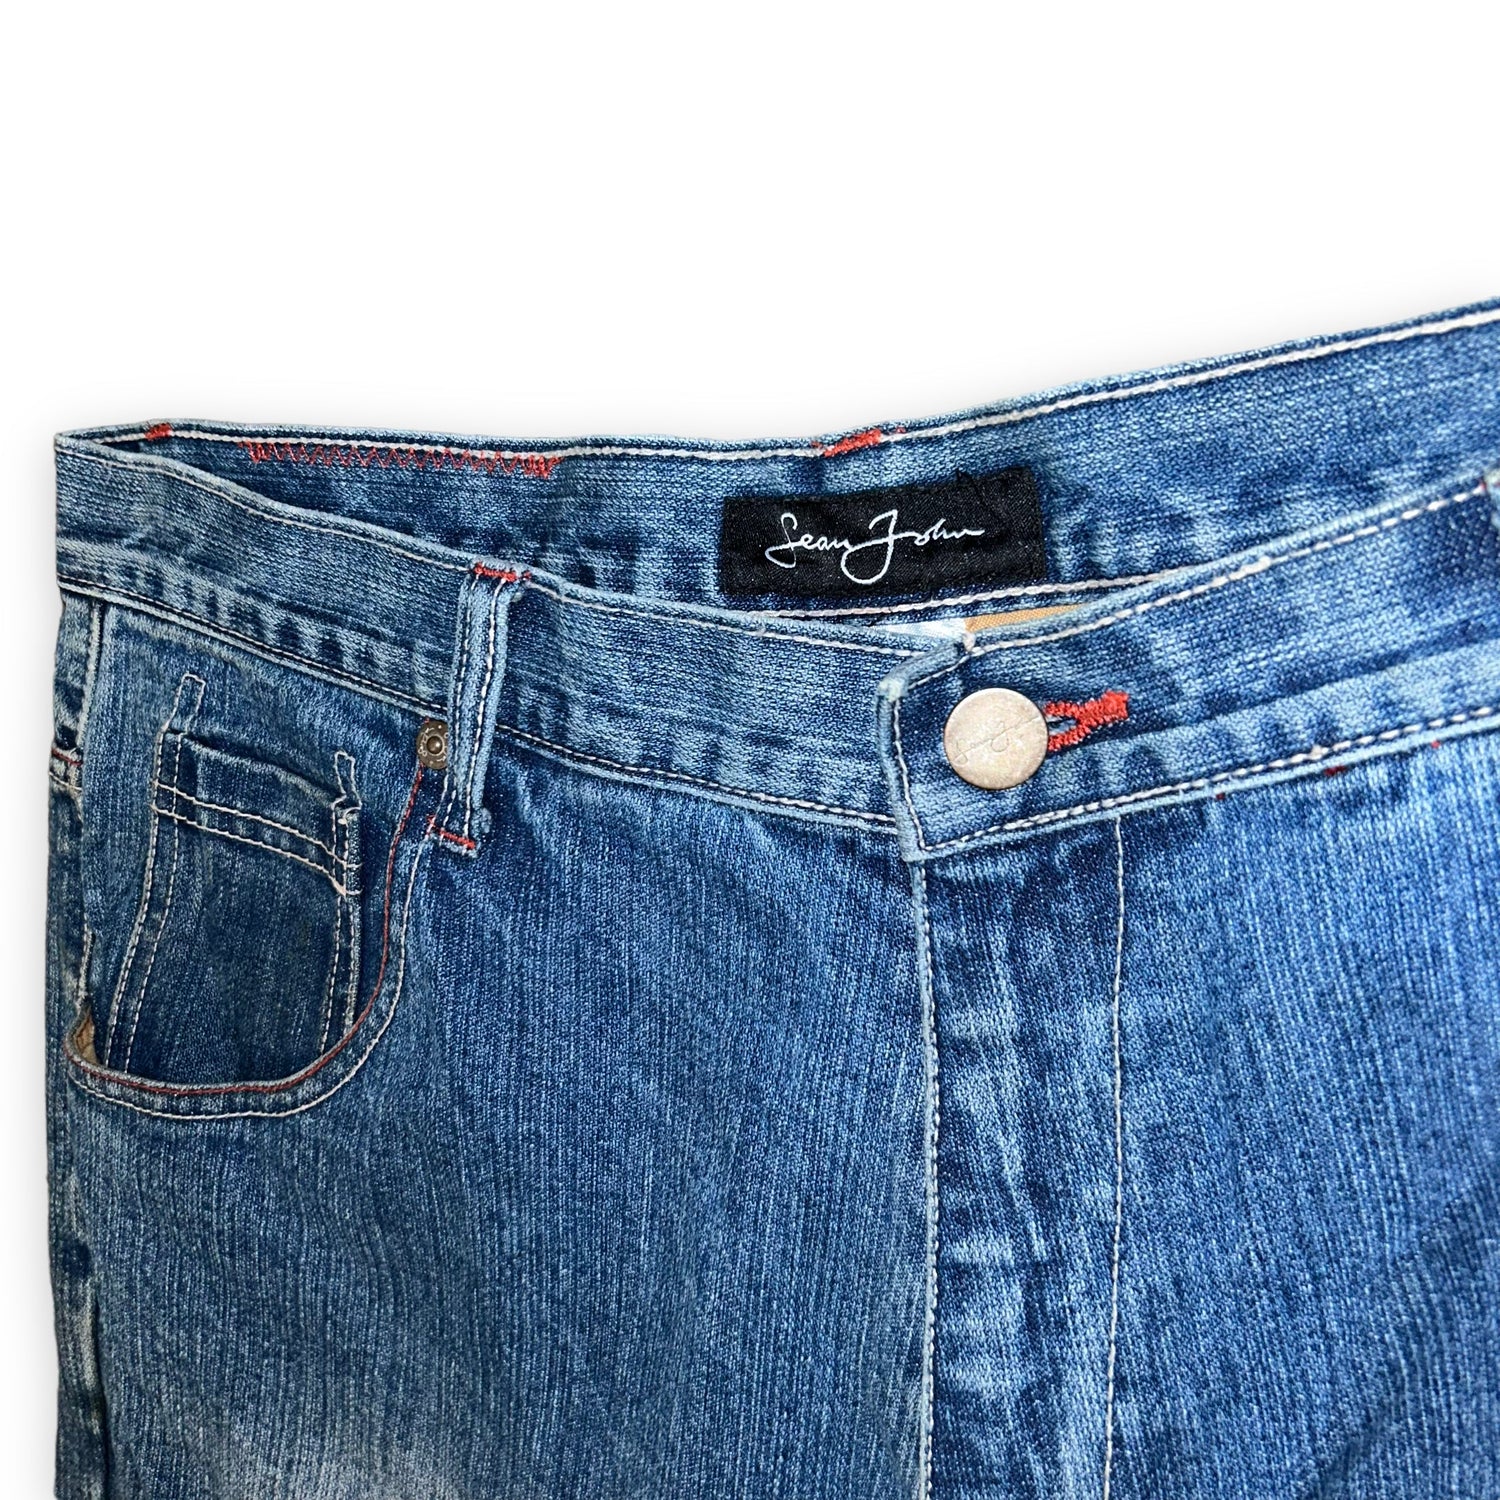 Baggy jeans Sean John vintage (38 USA XXL) - oldstyleclothing